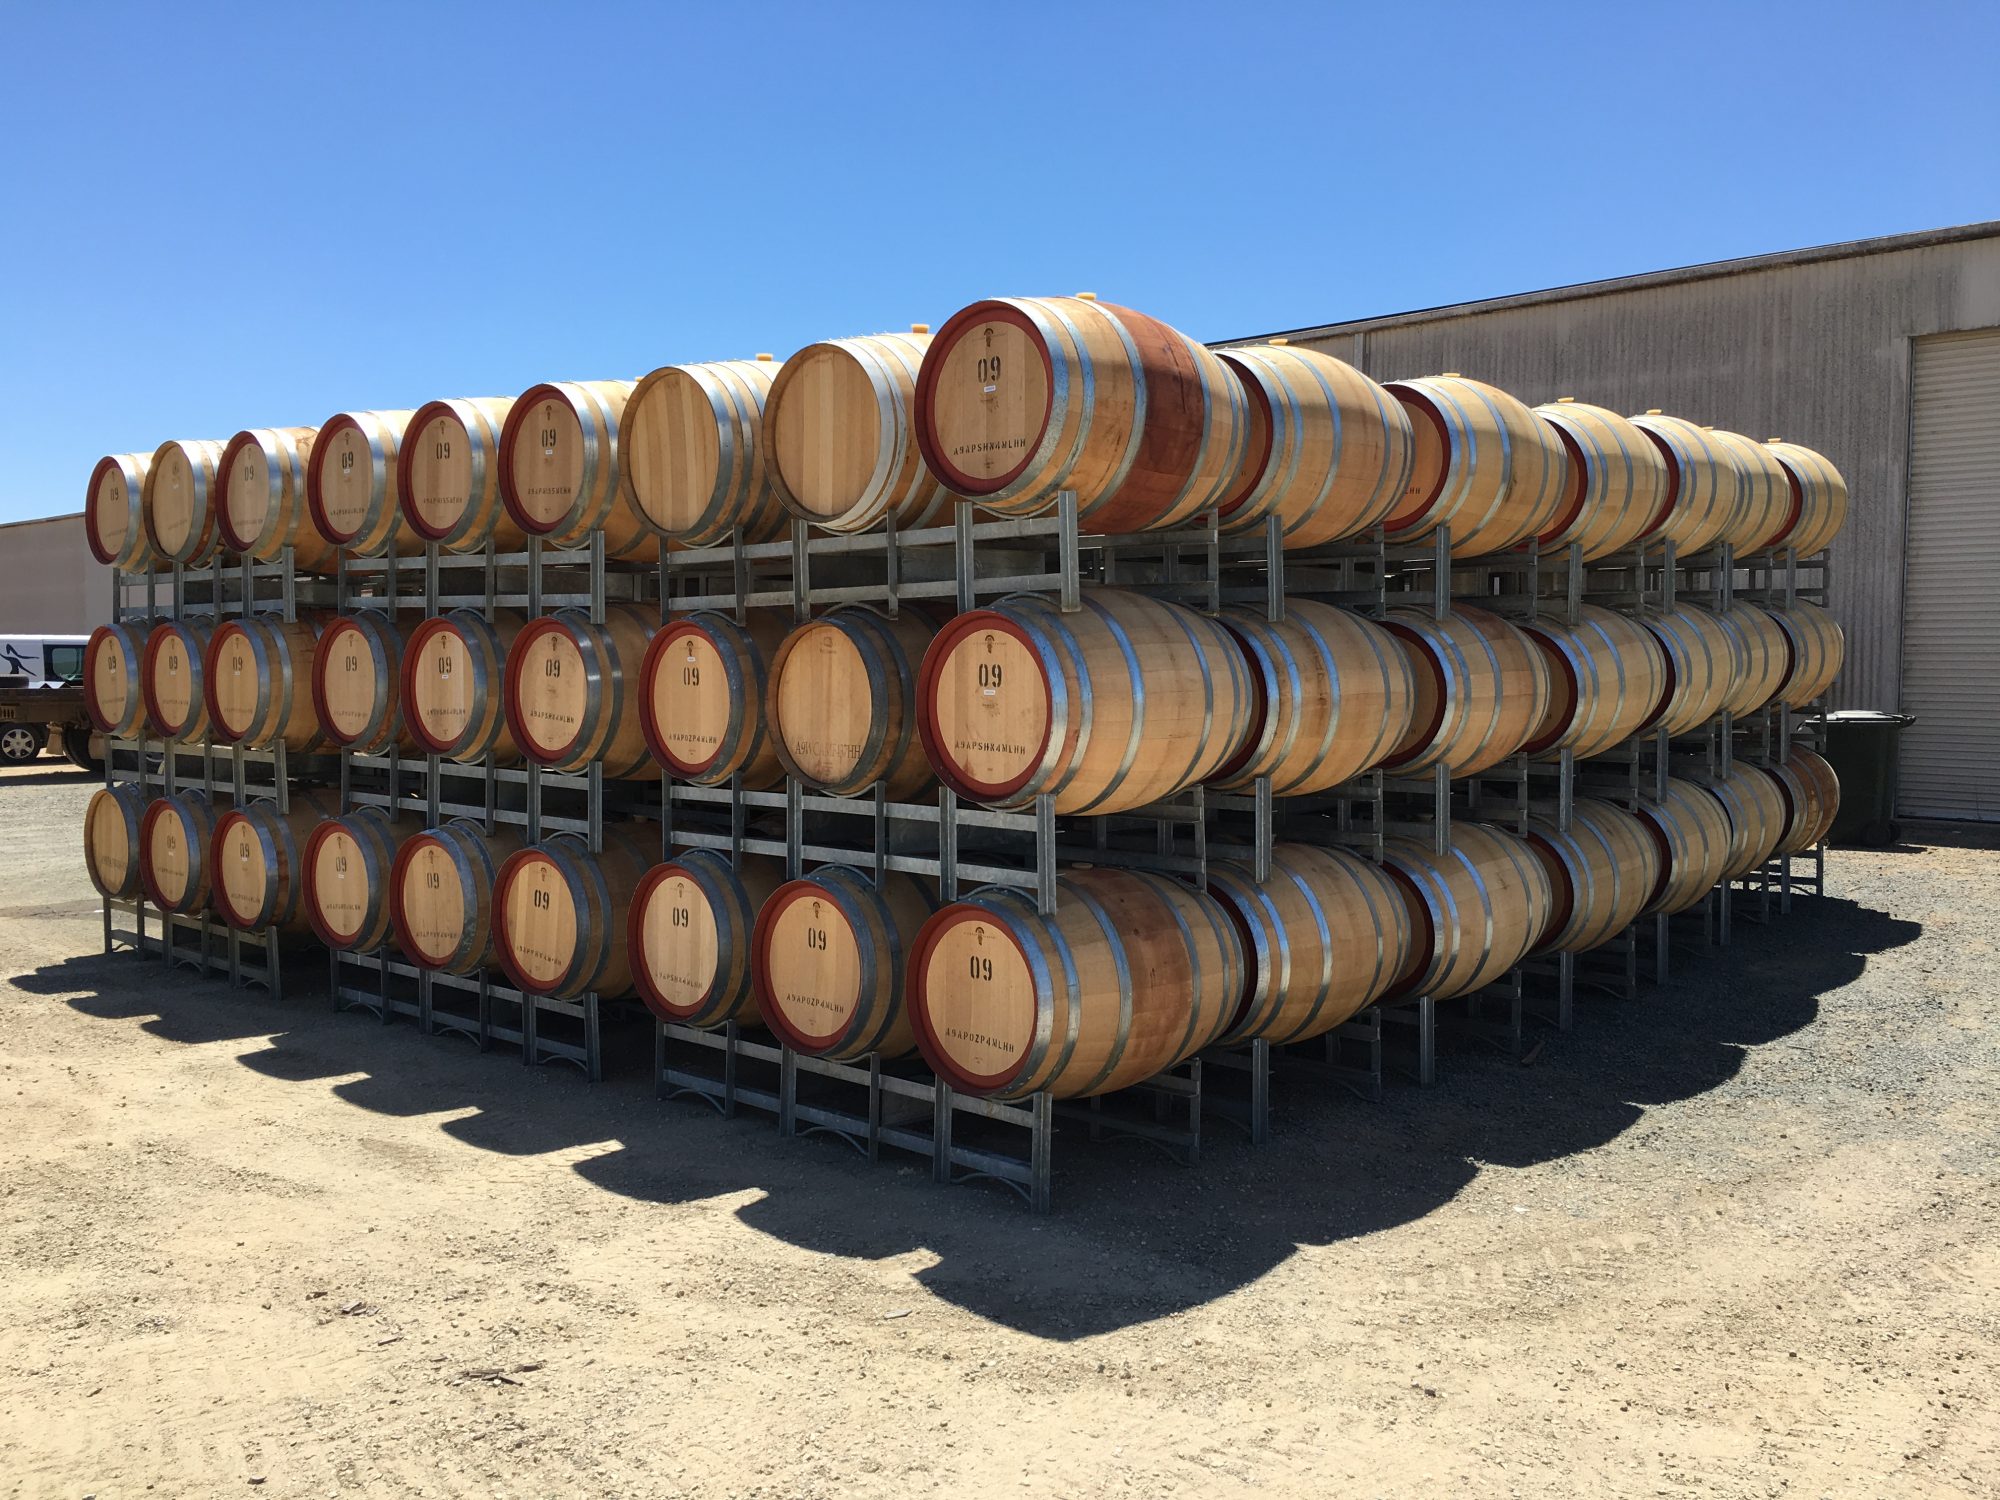 Rows of Wine Barrels at Moama Cellar Door